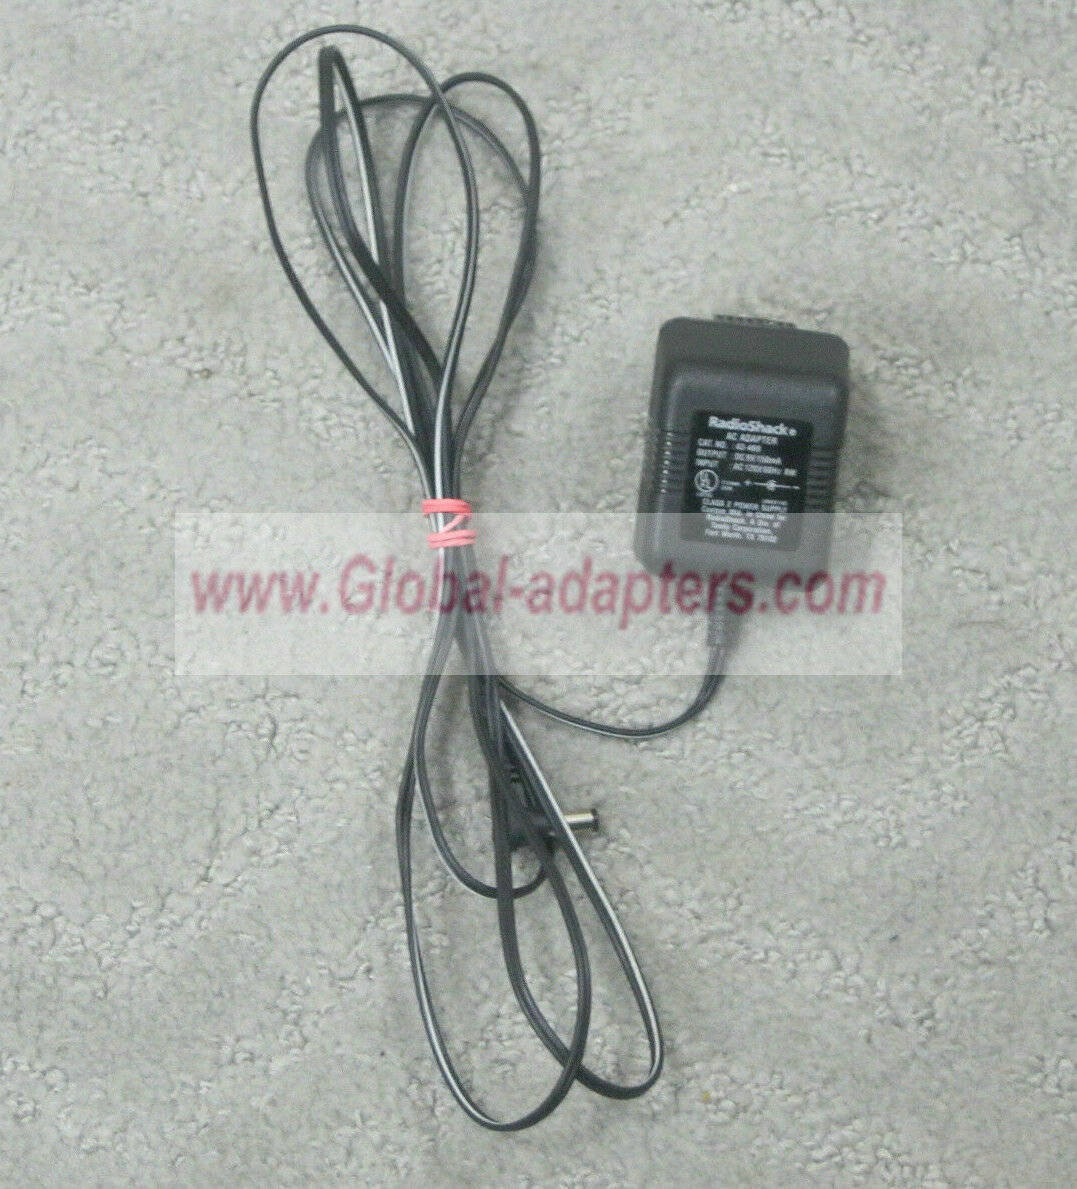 NEW 9V 150mA RadioShack 43-469 AC Power Adapter